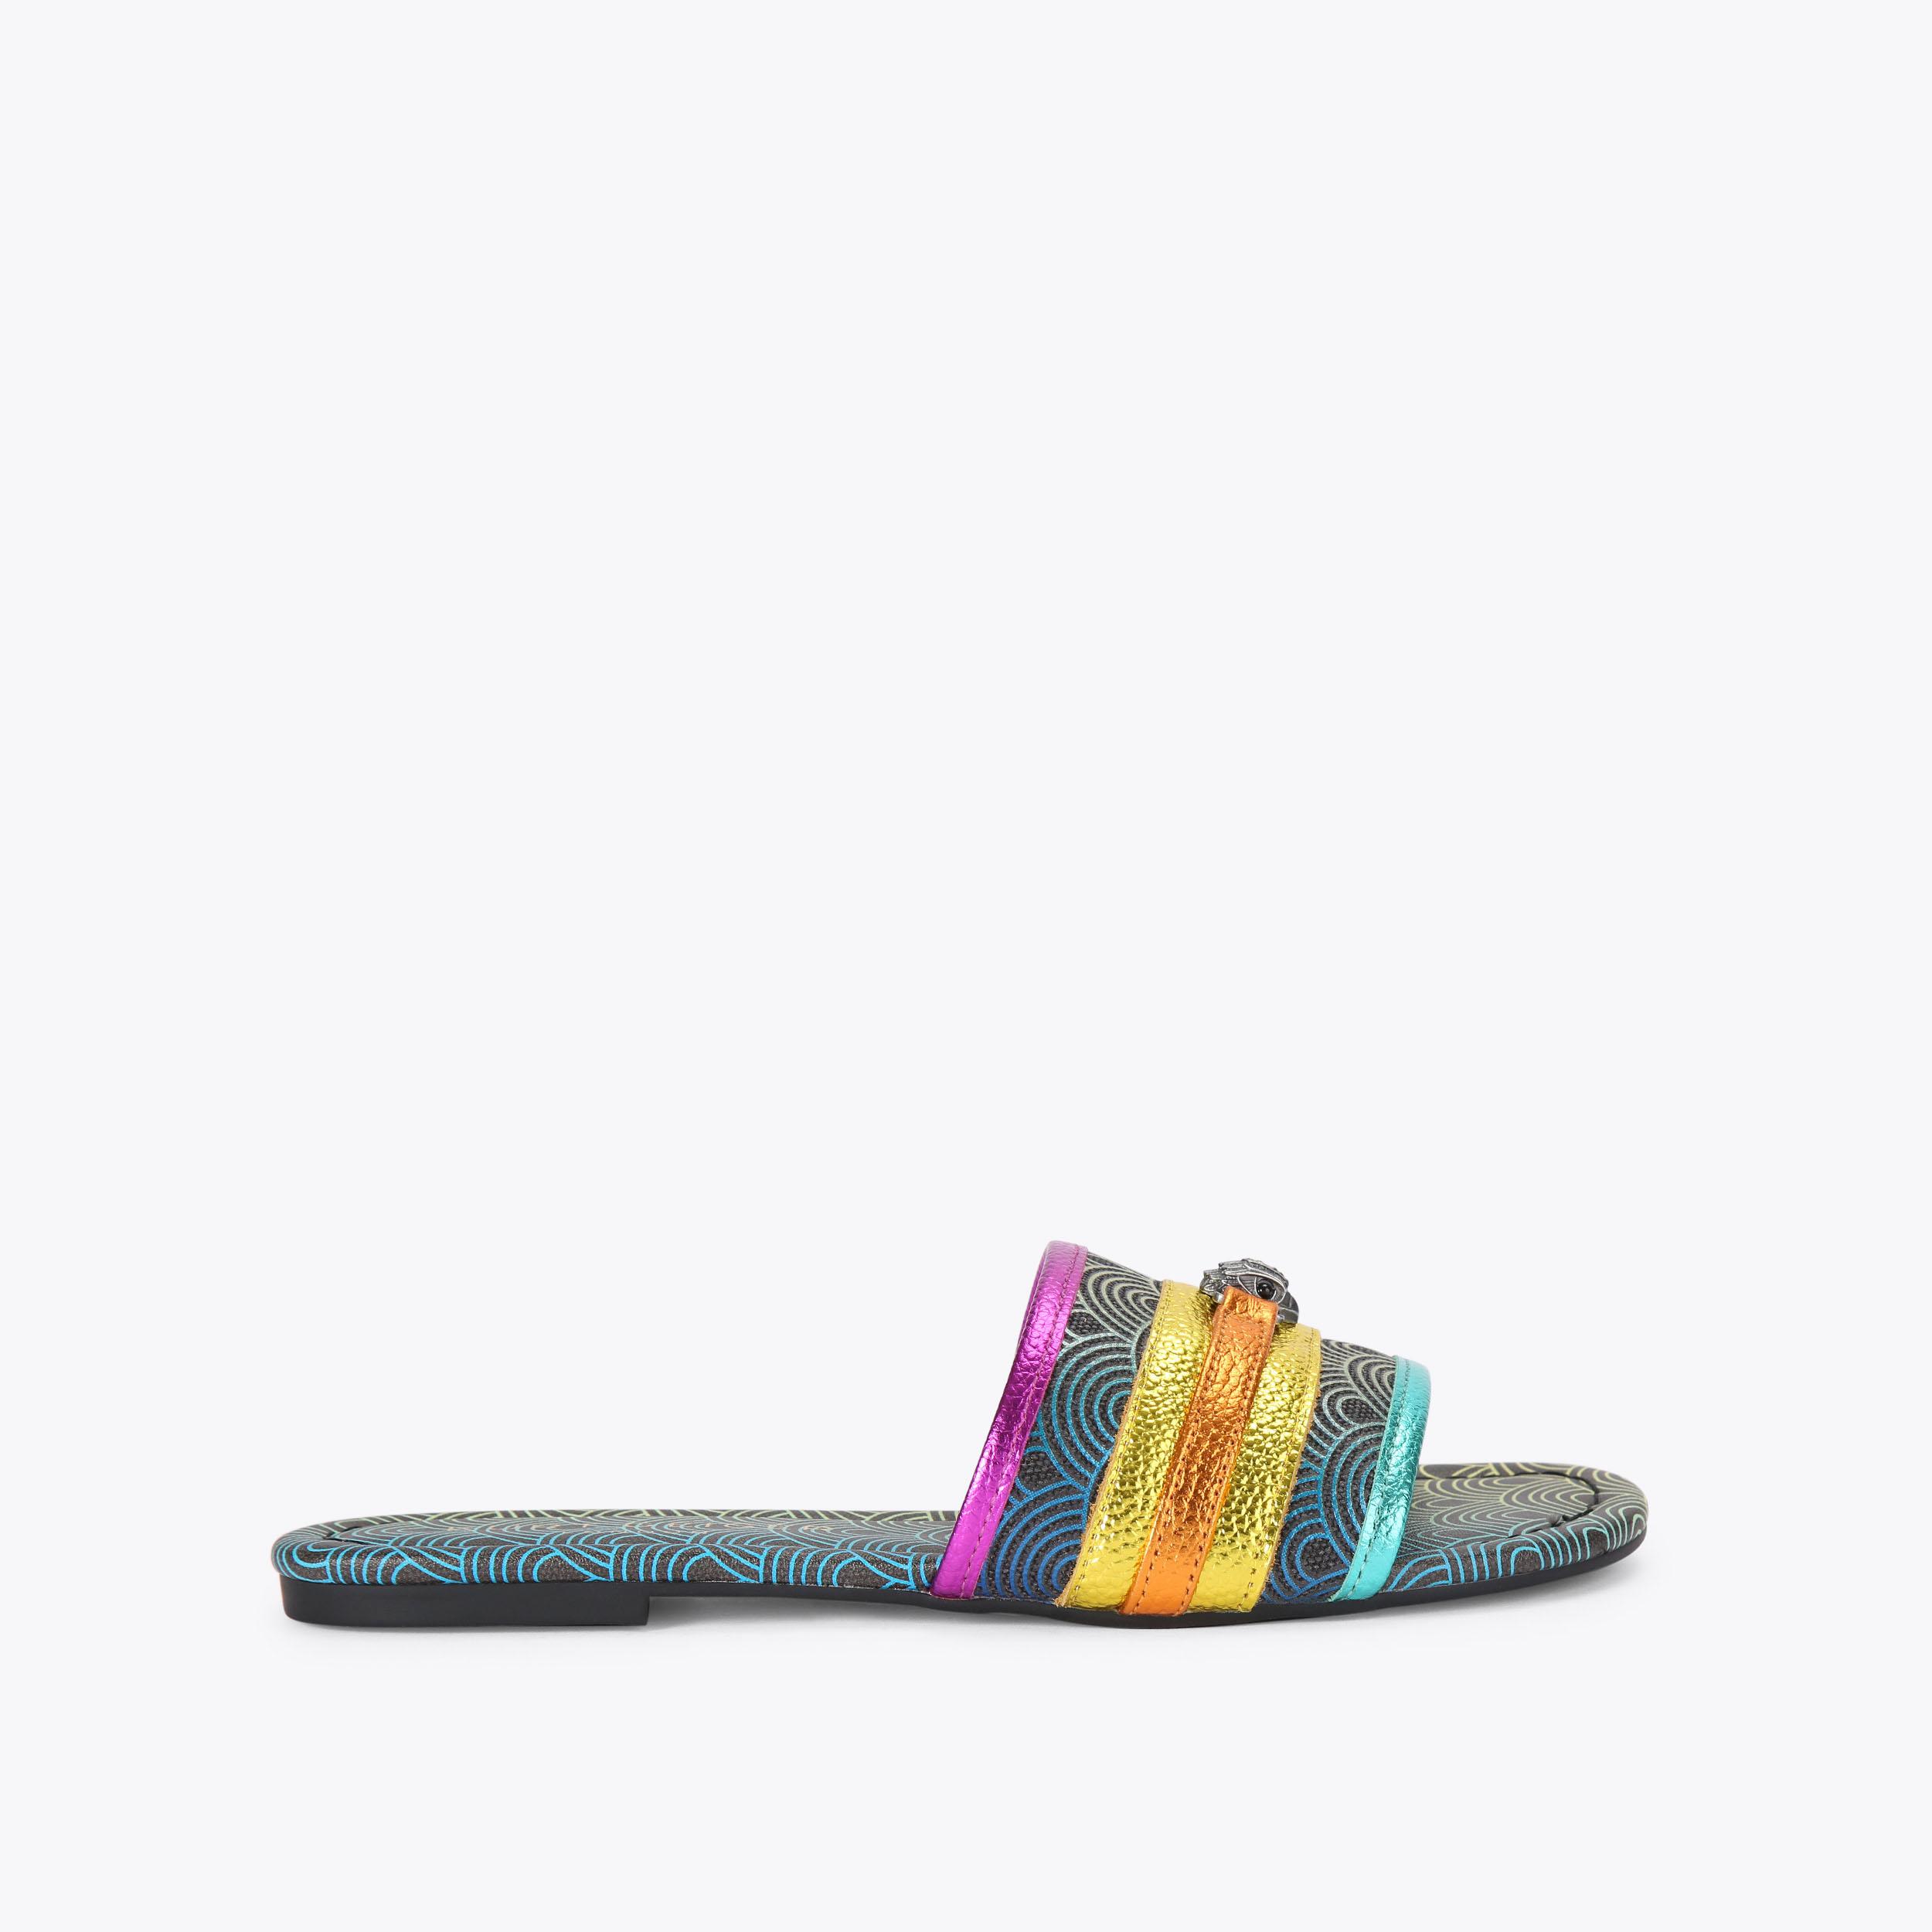 Flat Sandals | Black, Tan, Nude, Gold | Women's Sandals | Kurt Geiger